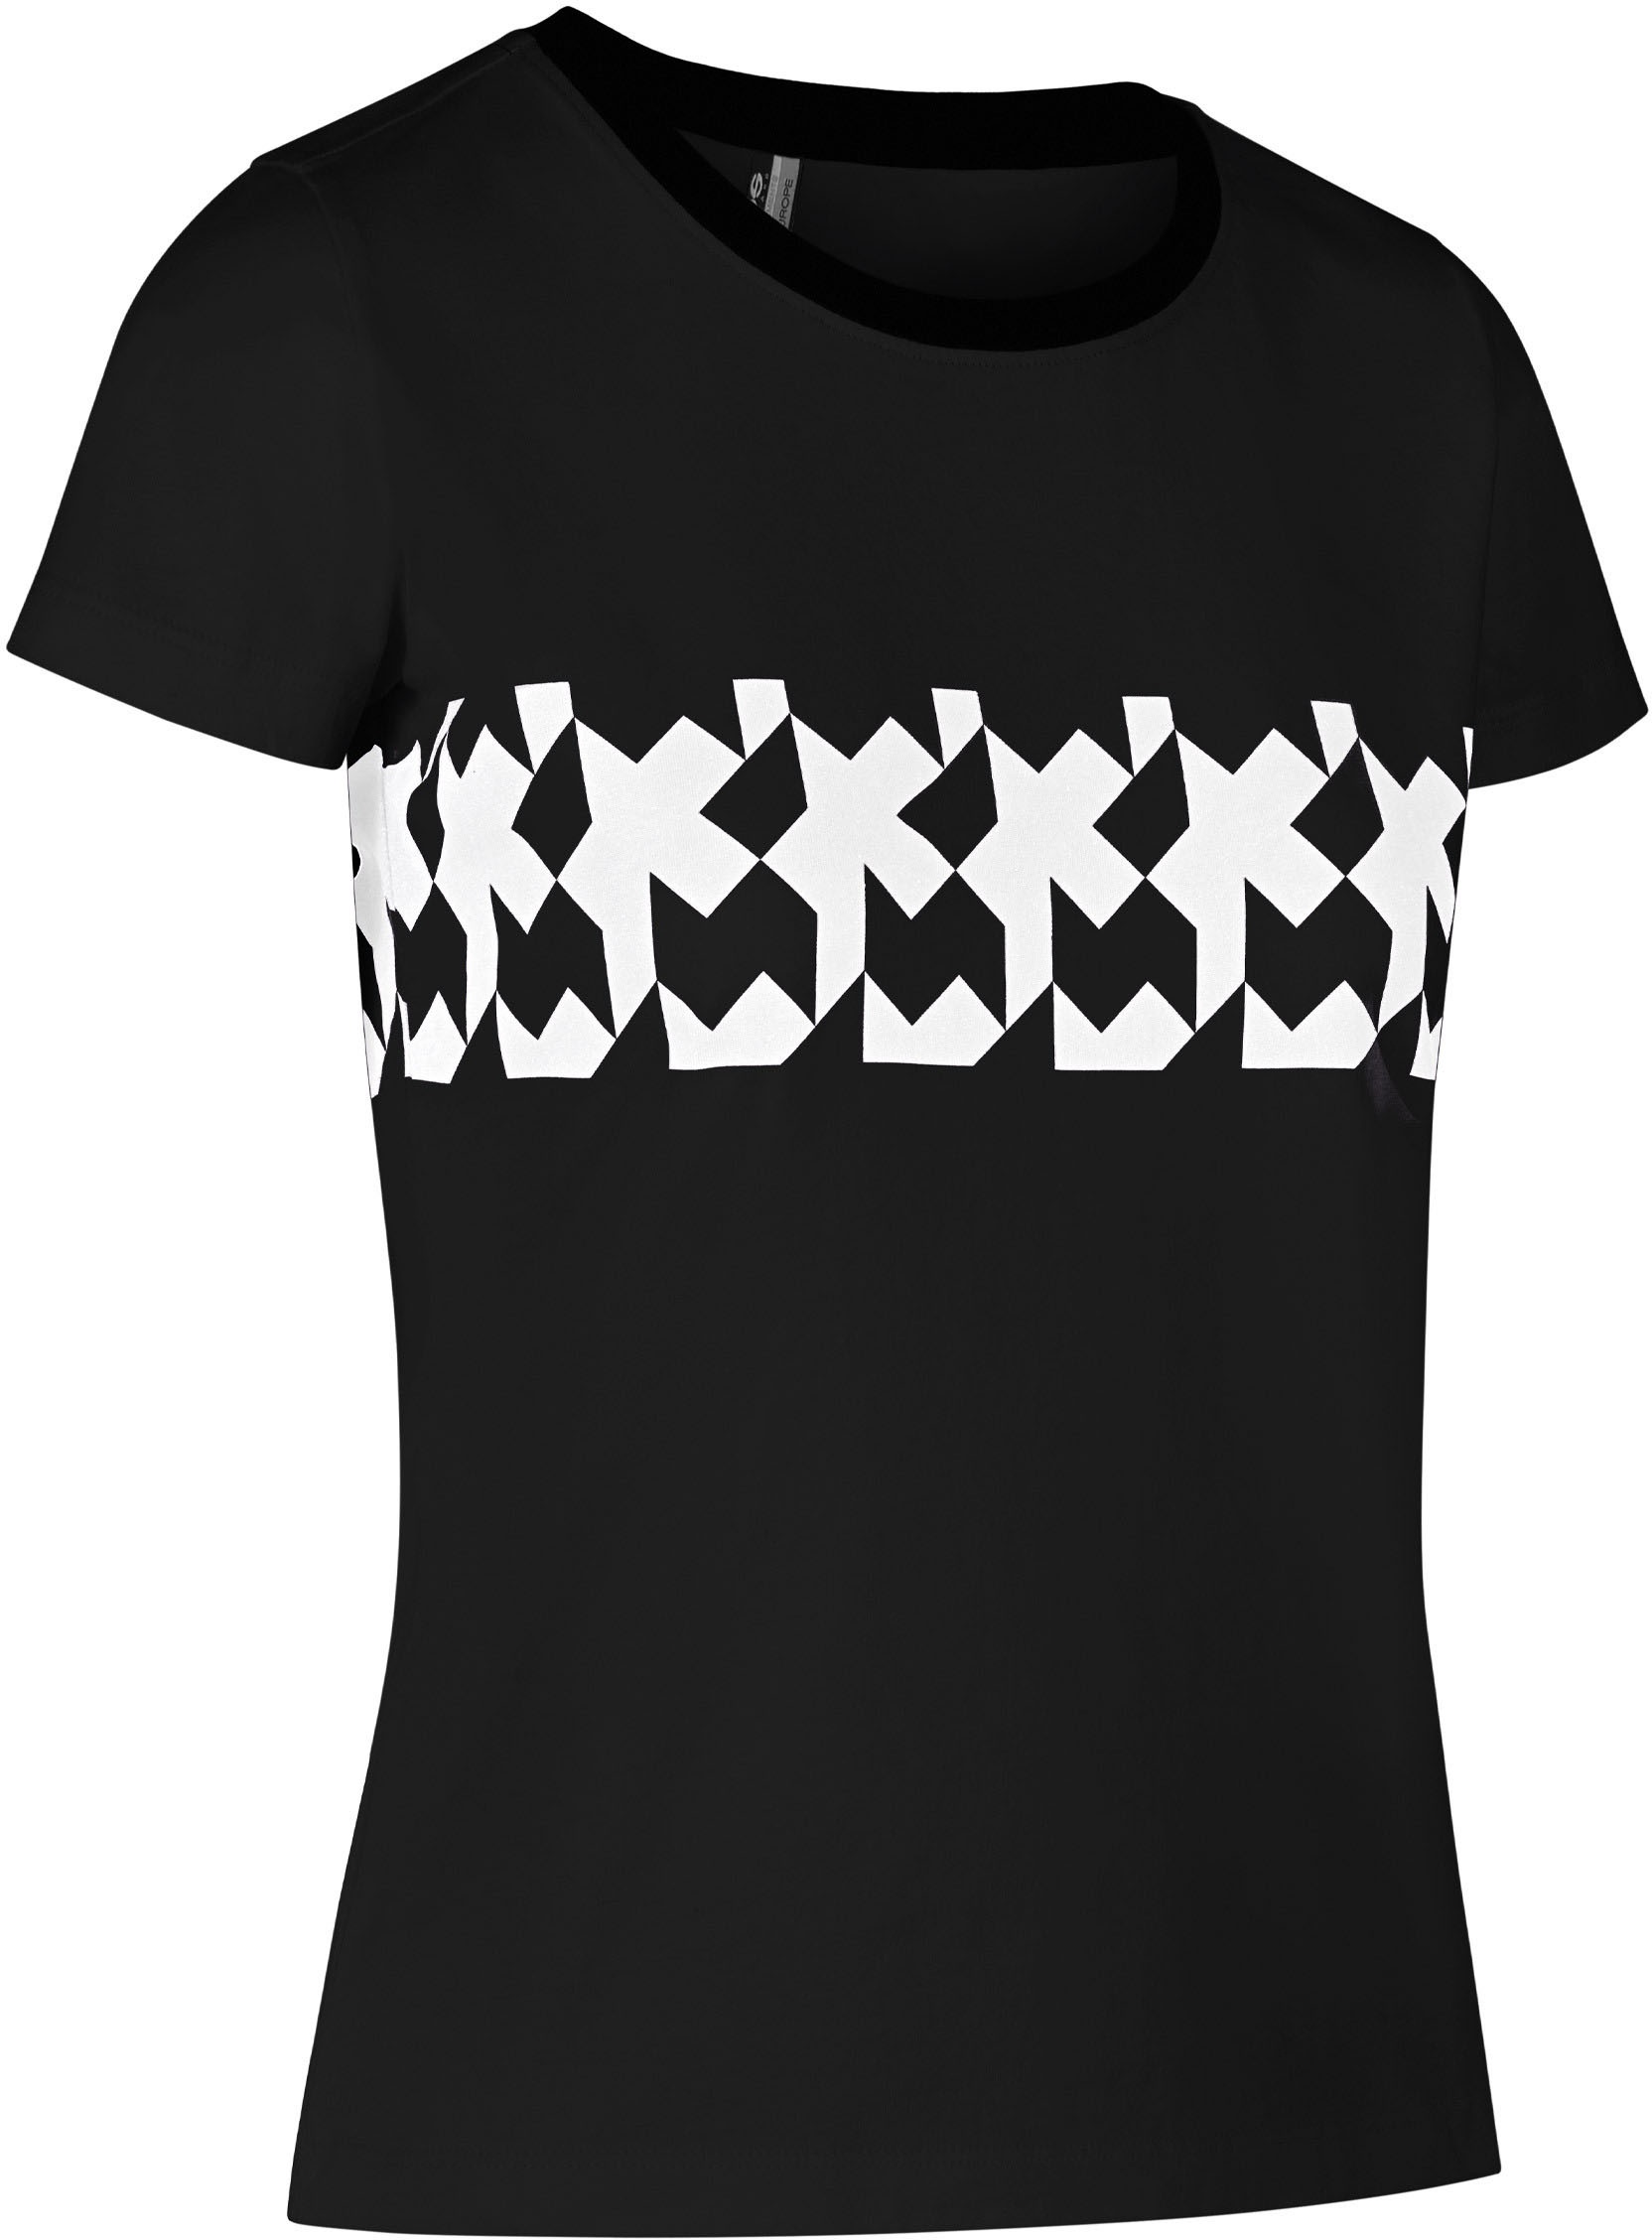 Beklædning - Merchandise - Assos SIGNATURE Women's Summer T-Shirt RS Griffe - Sort